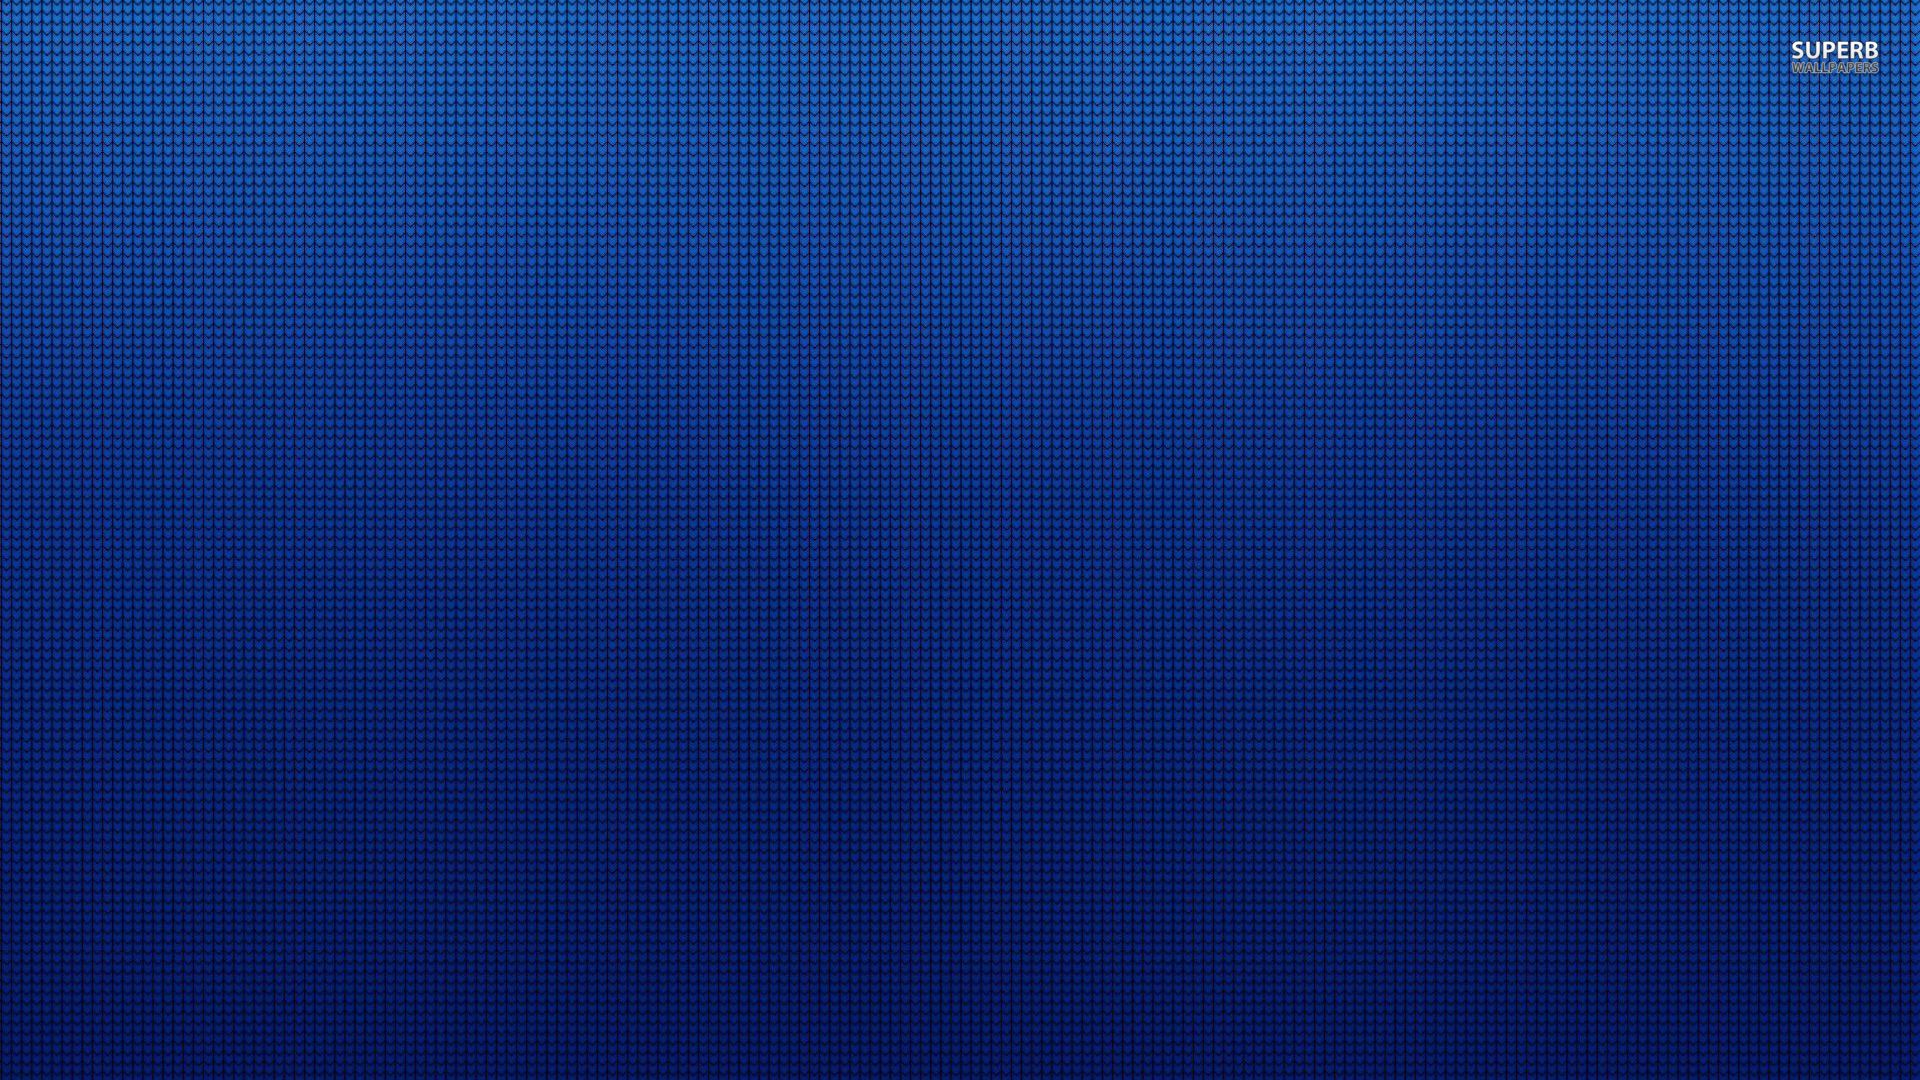 Blue Wallpaper Pattern